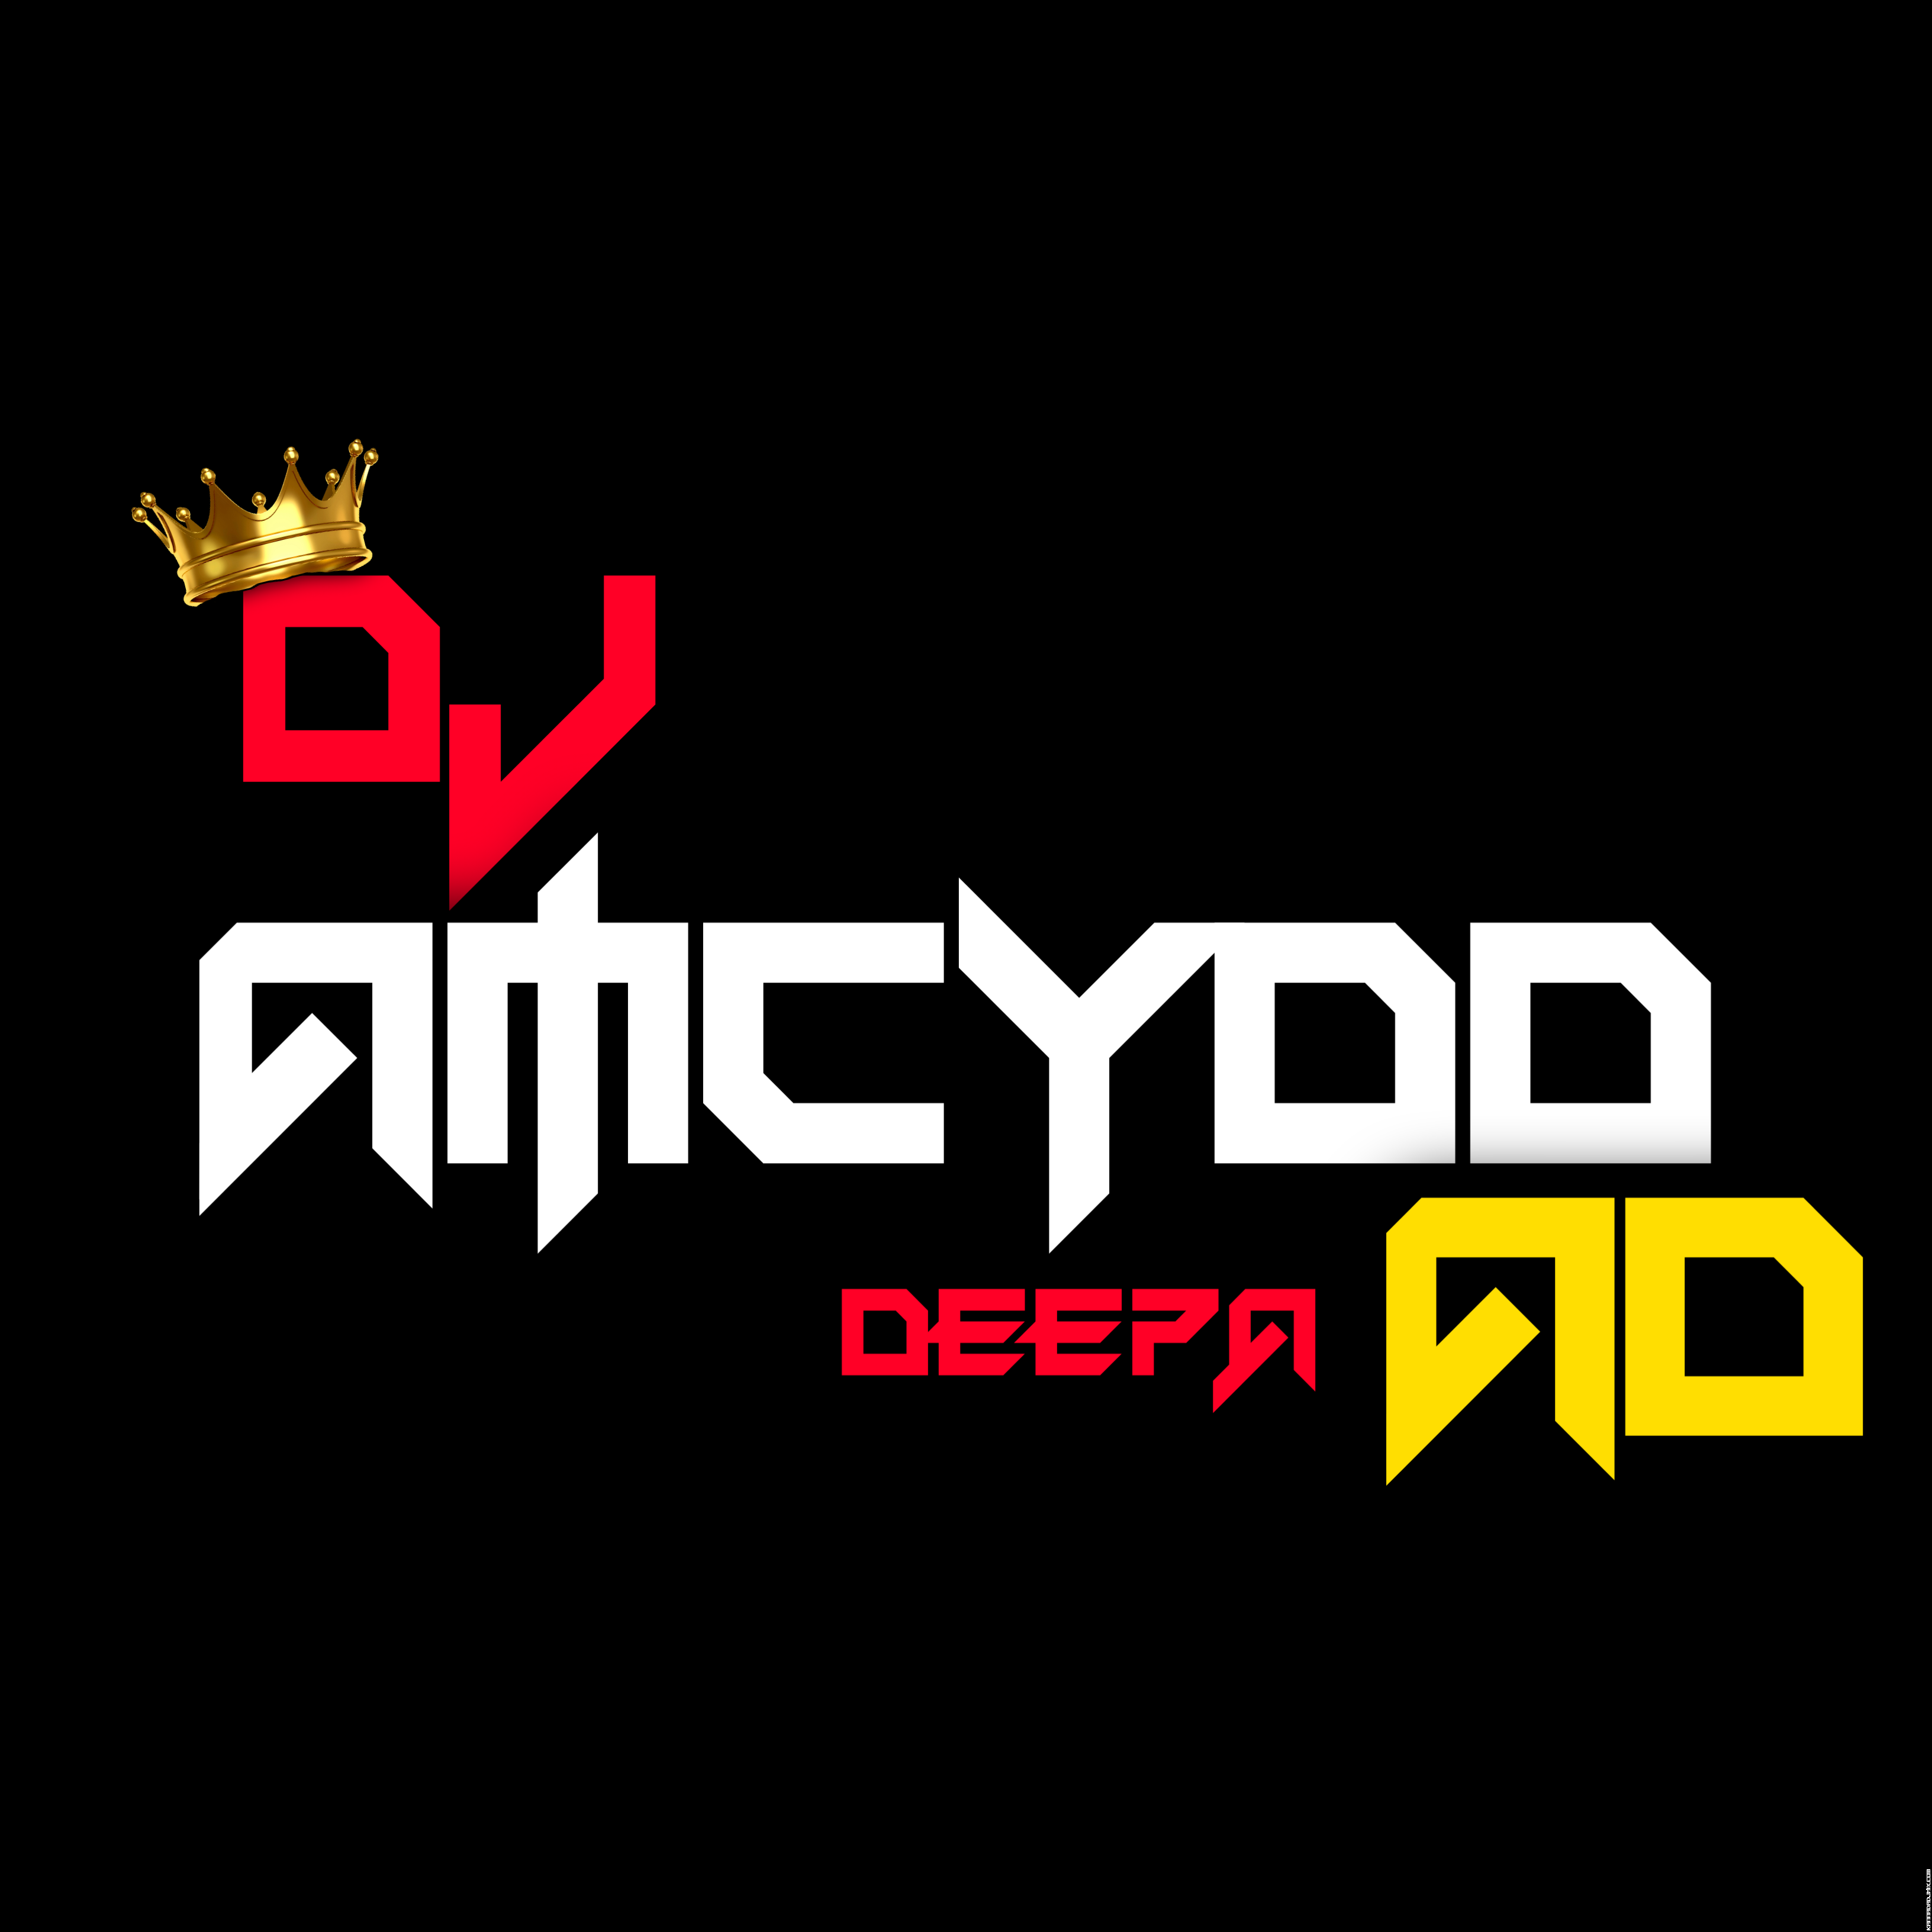 DJ AMCYDD